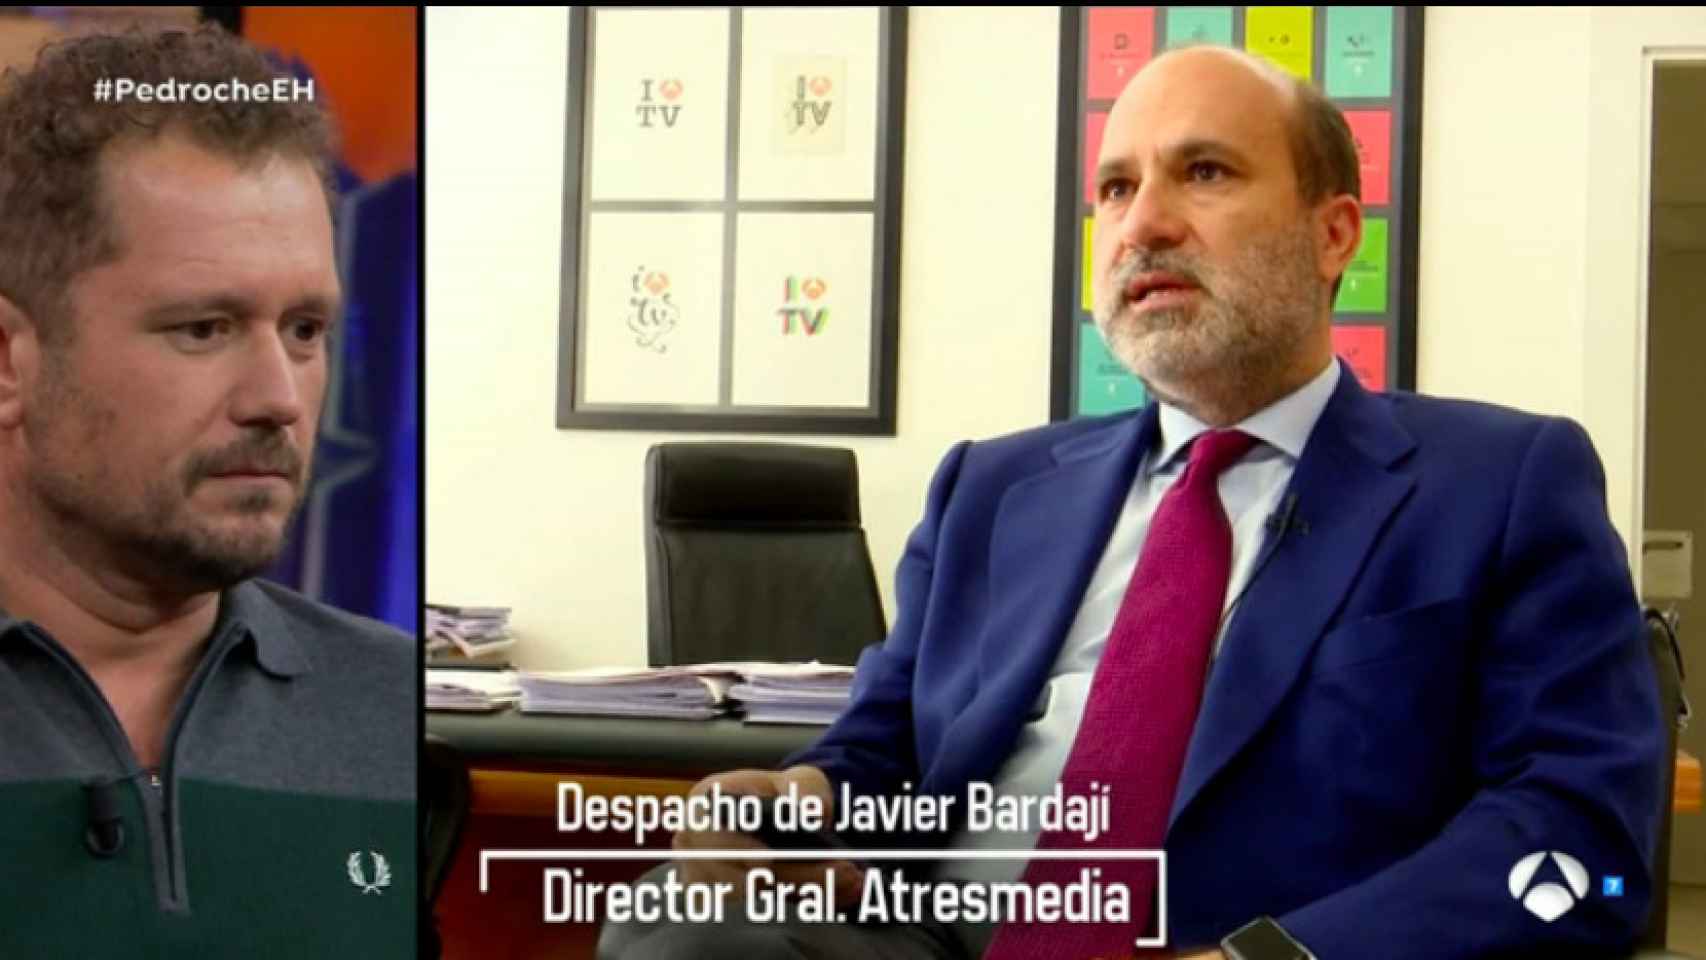 La aparición estelar de Bardají, director de Atresmedia, en 'El hormiguero'